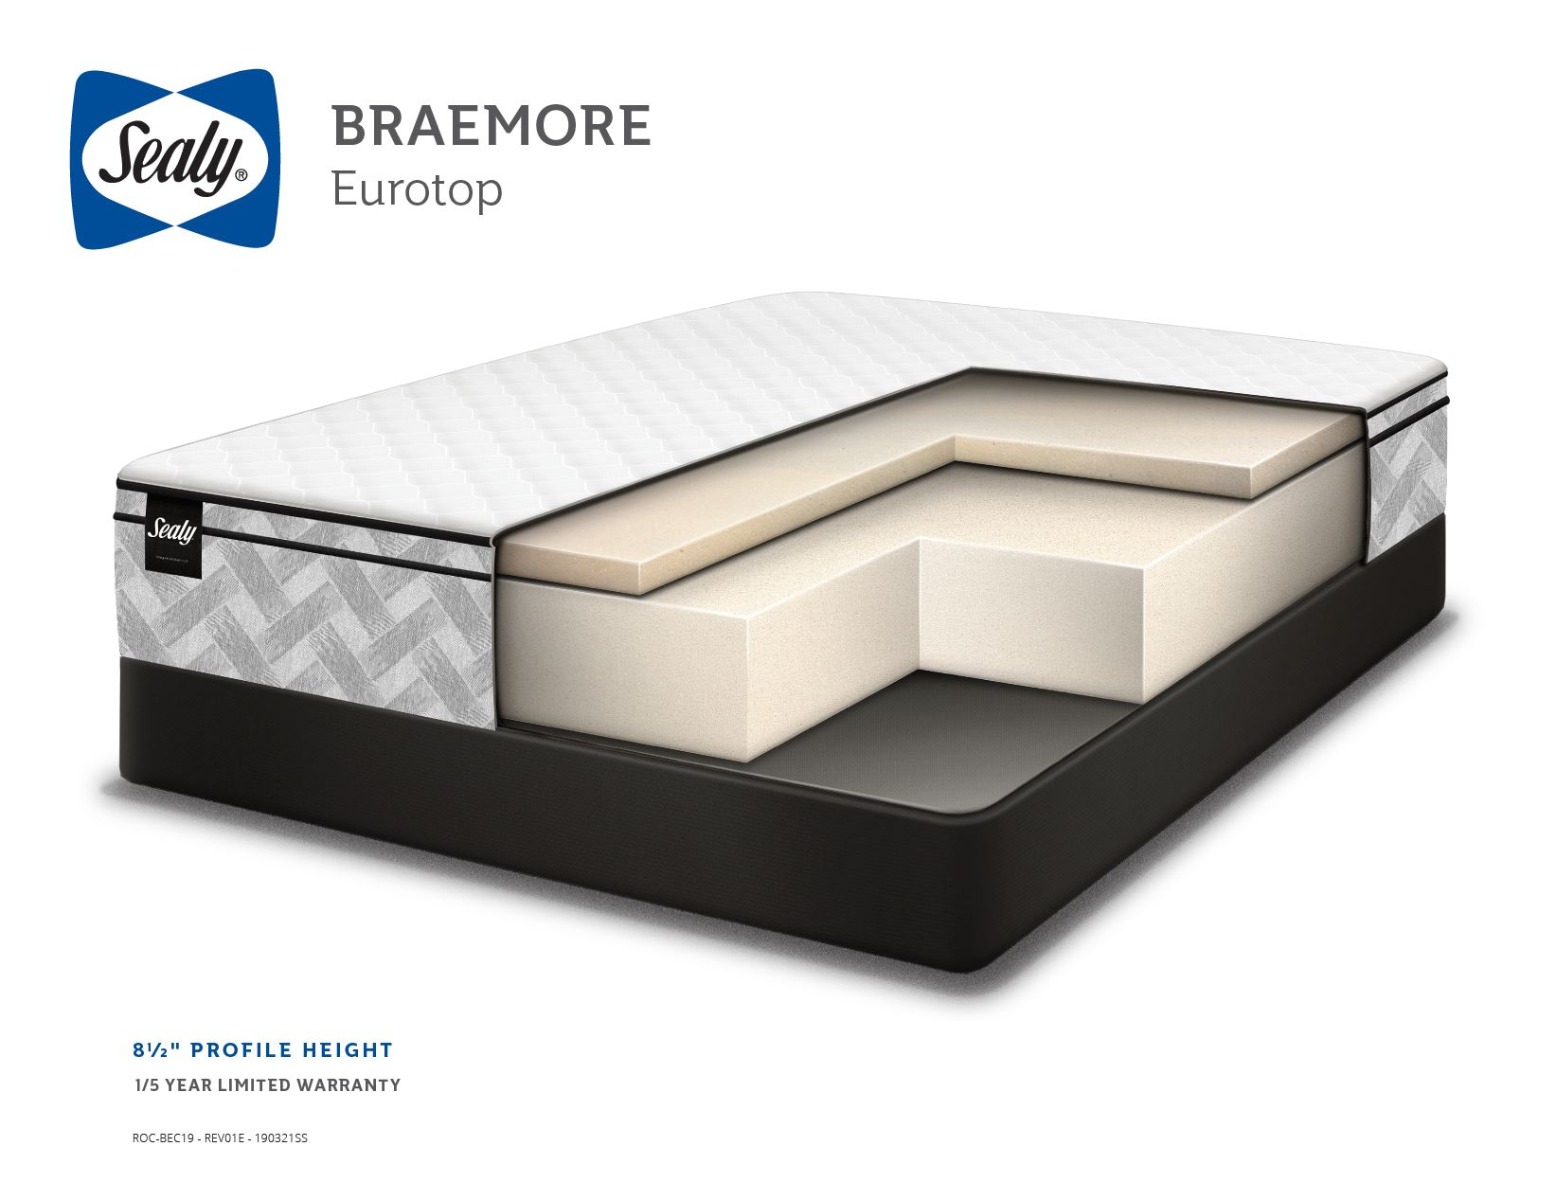 Sealy Essentials Eurotop Braemore Mattress Spec 2